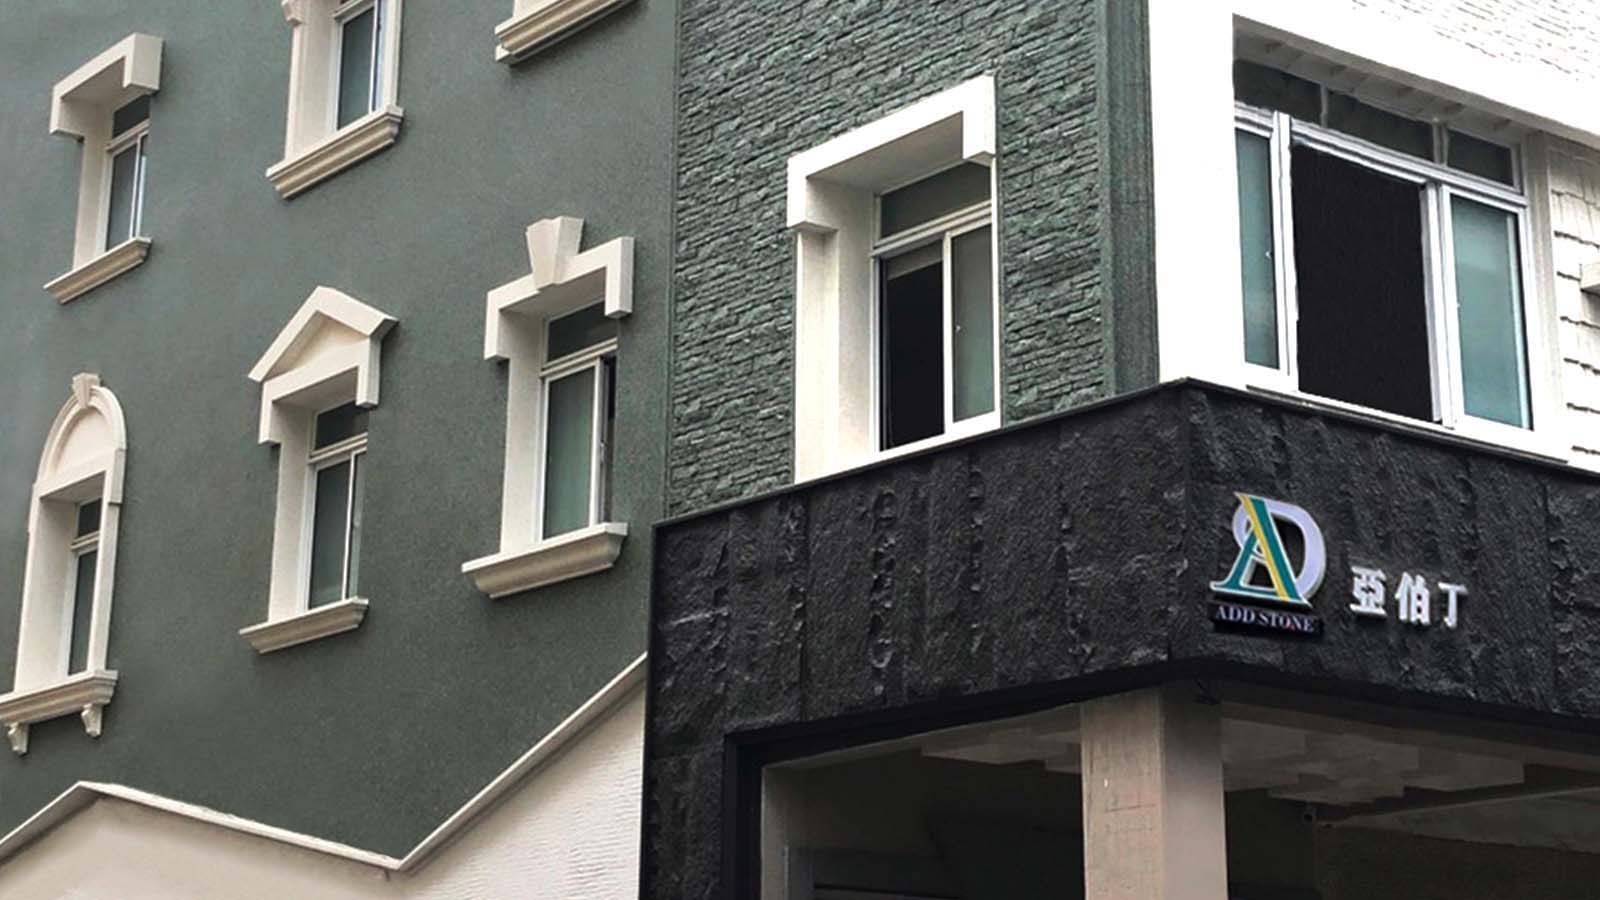 亞伯丁在台灣高雄的總公司，建築物外牆噴塗有ADD STONE亞仿石漆，看起來就像是鑲嵌了花崗岩石板的牆面